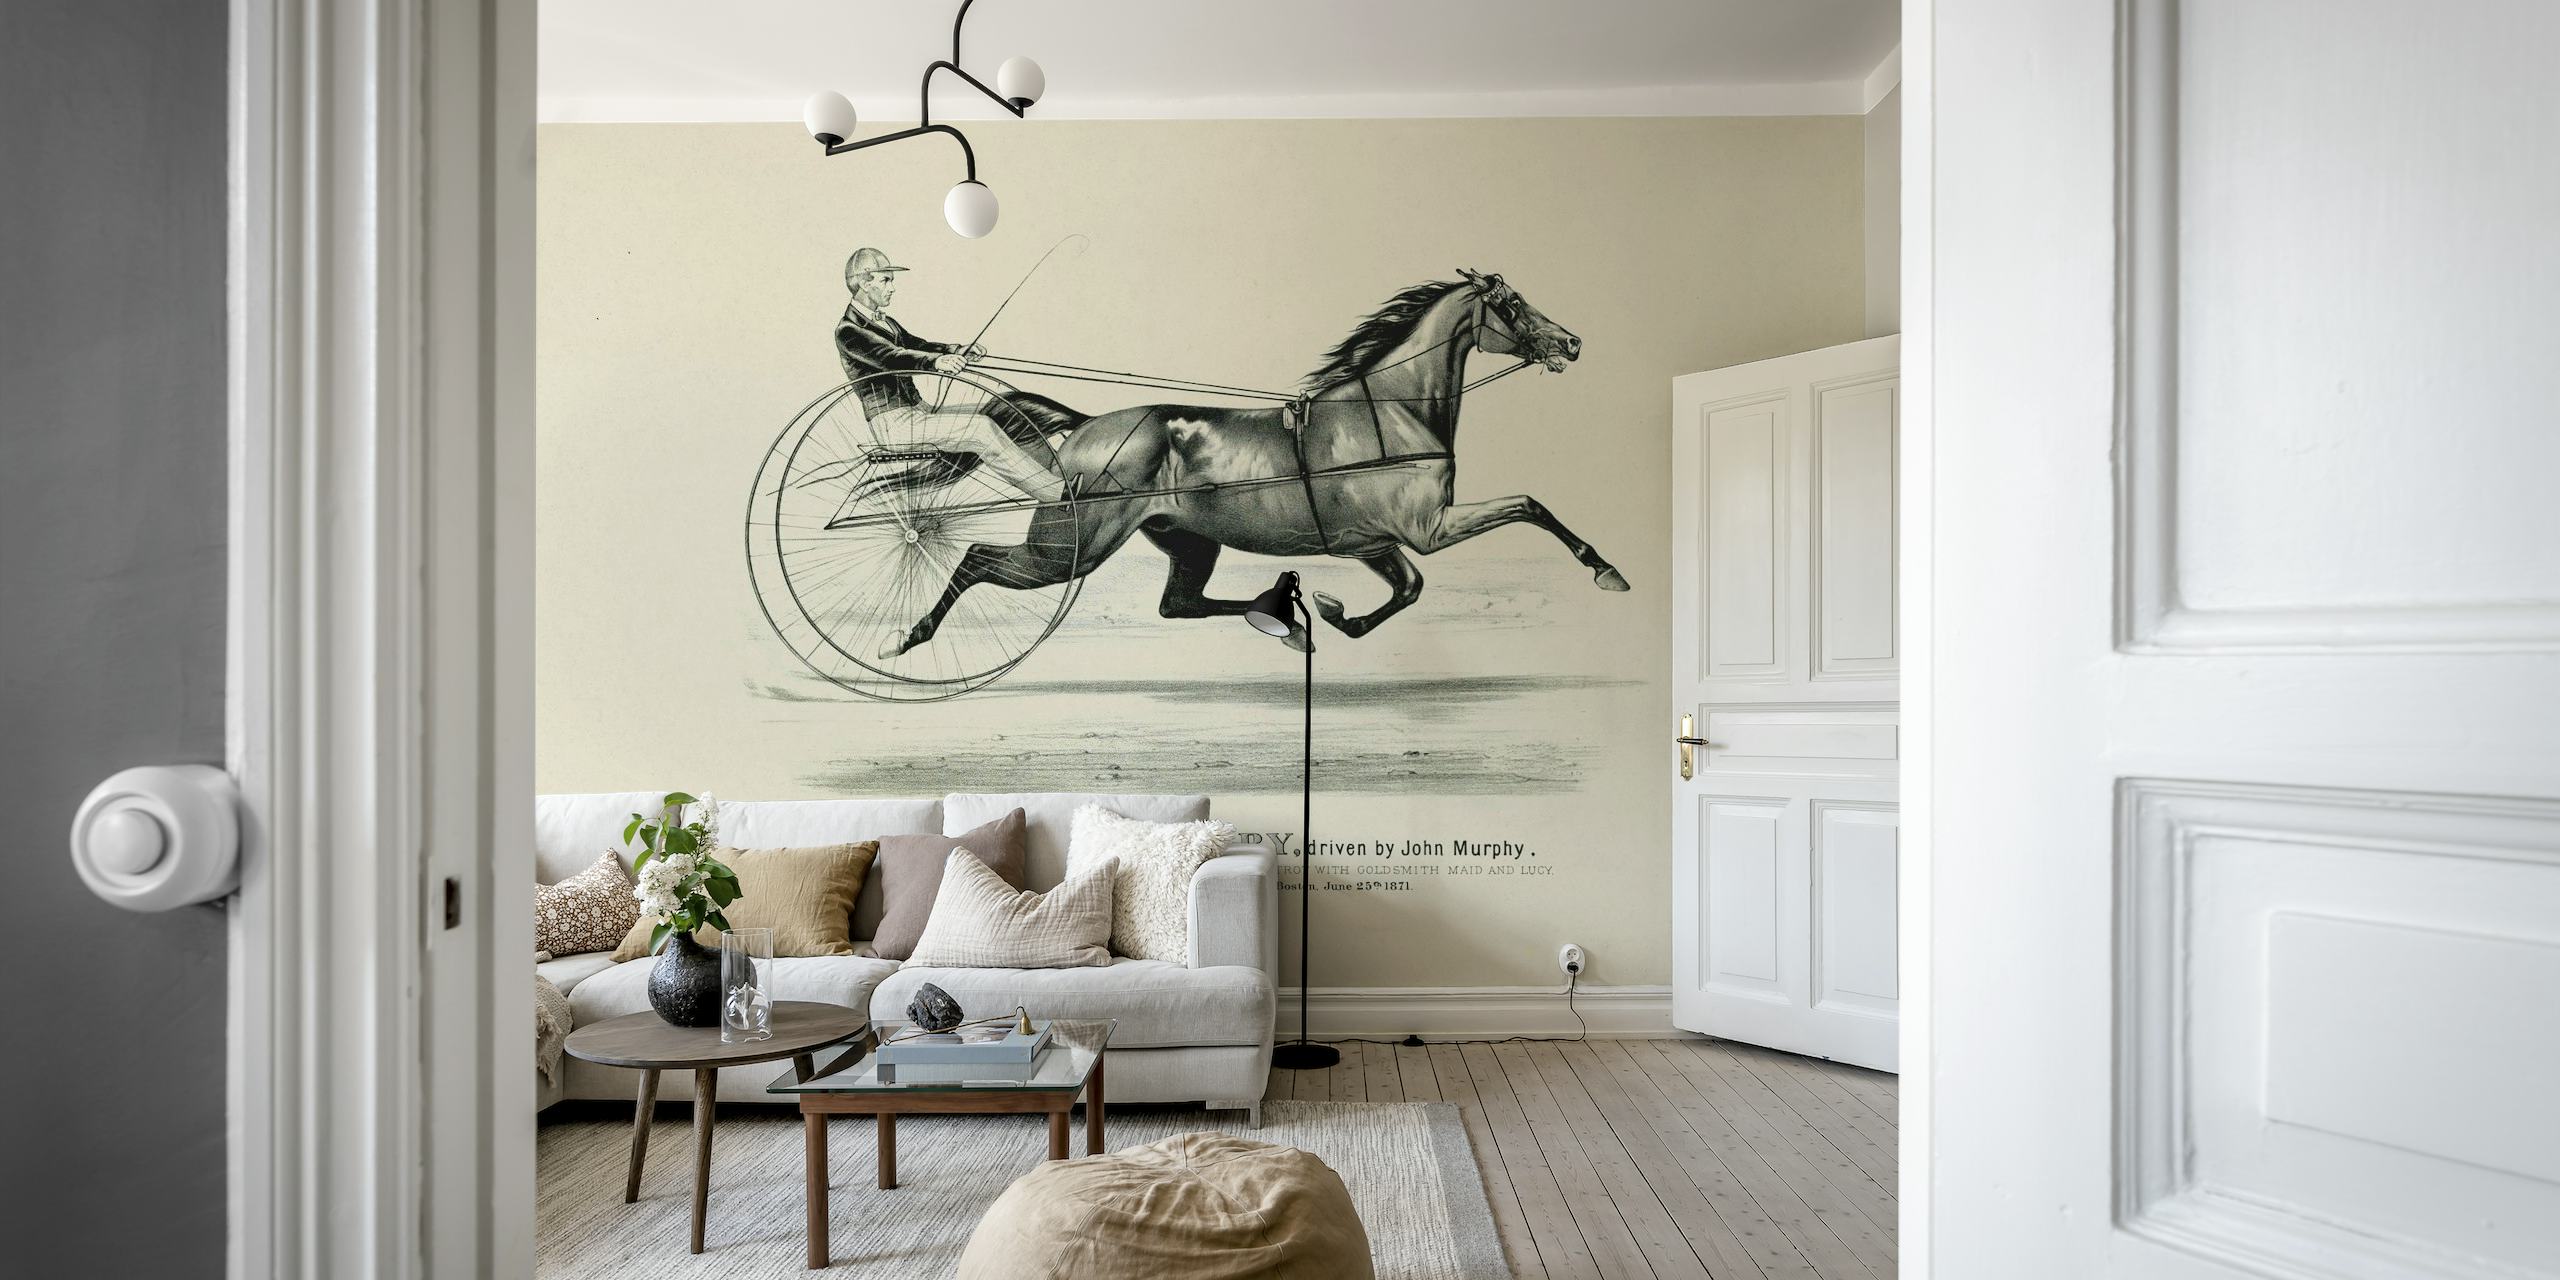 Historická nástěnná malba jezdectví zobrazující koně a jezdce v klasickém stylu.